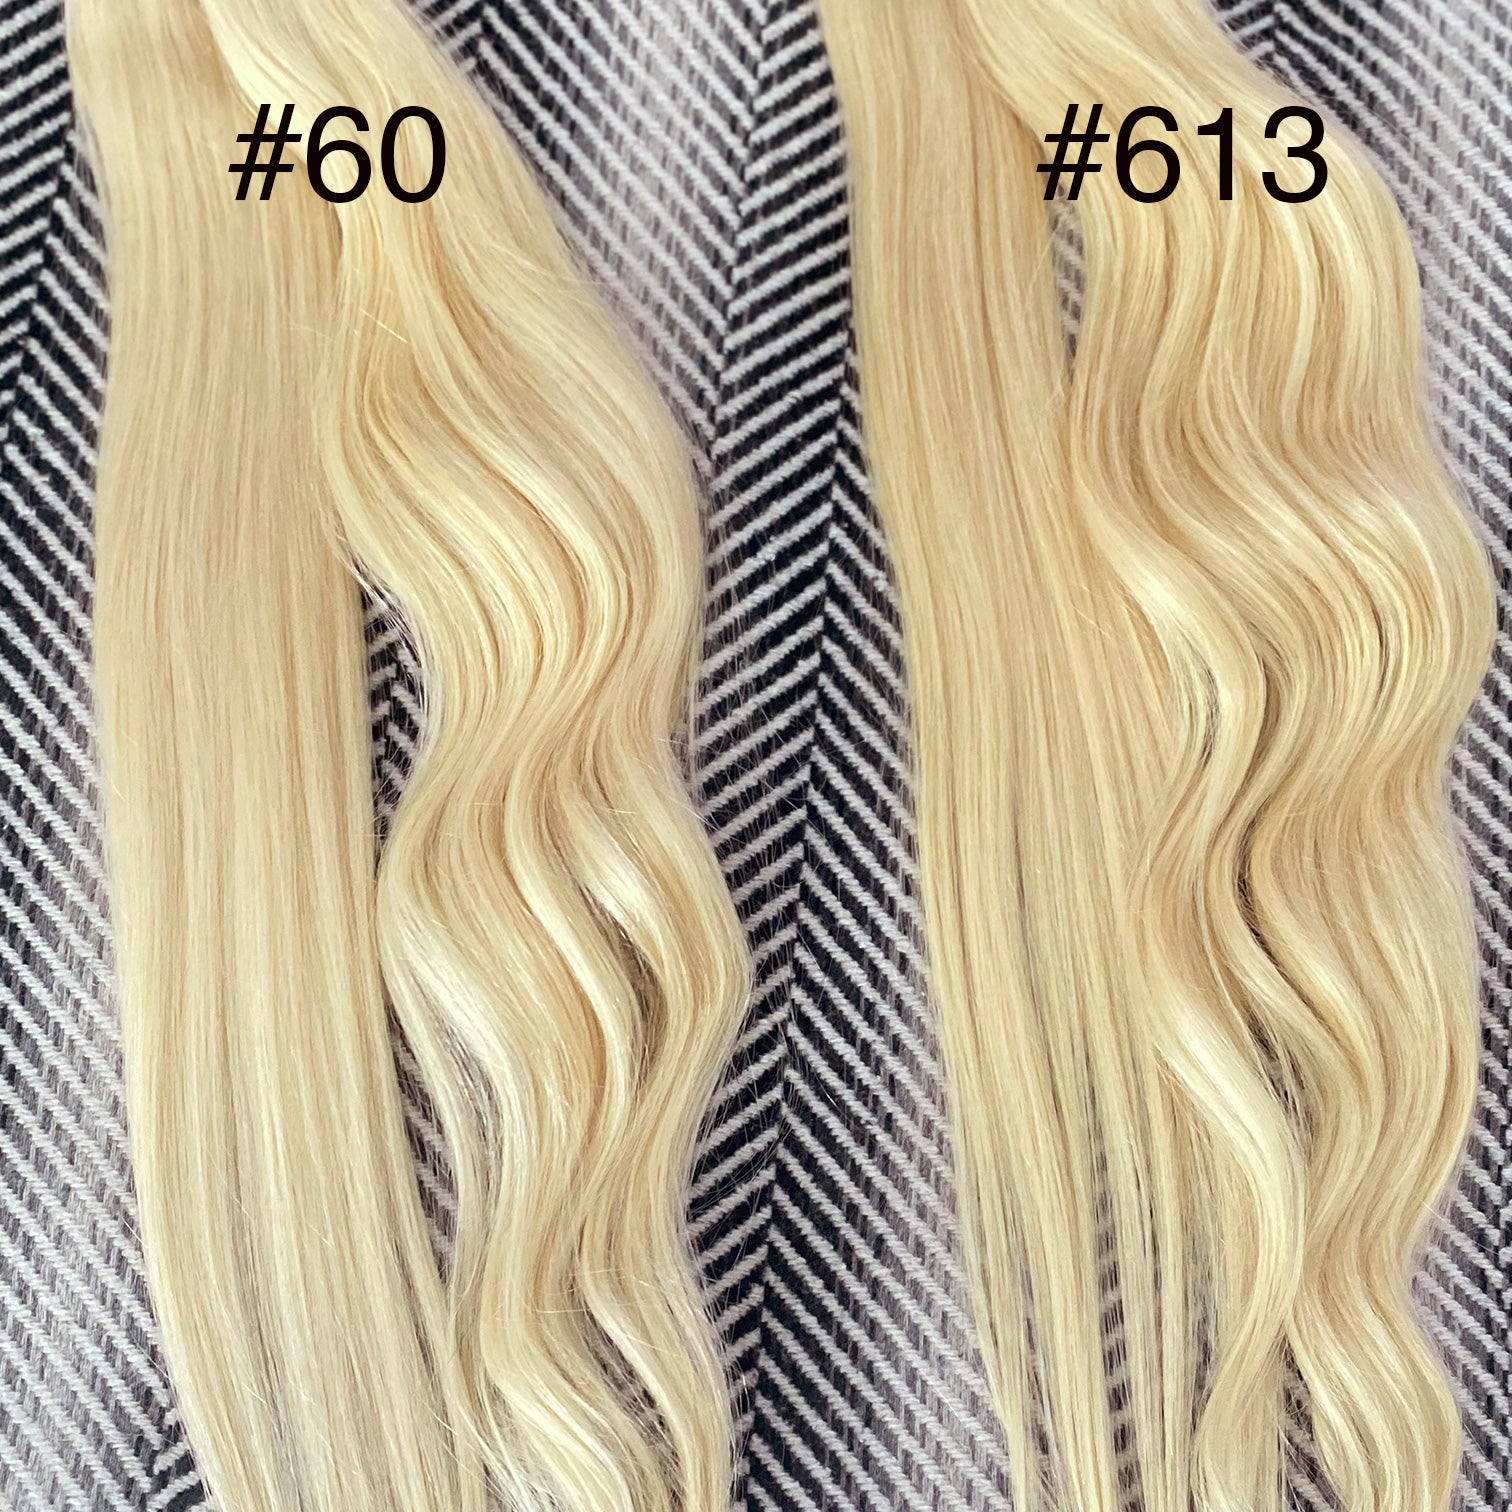 Flat Weft Hair Extensions - #613 Bleach Blonde 22"